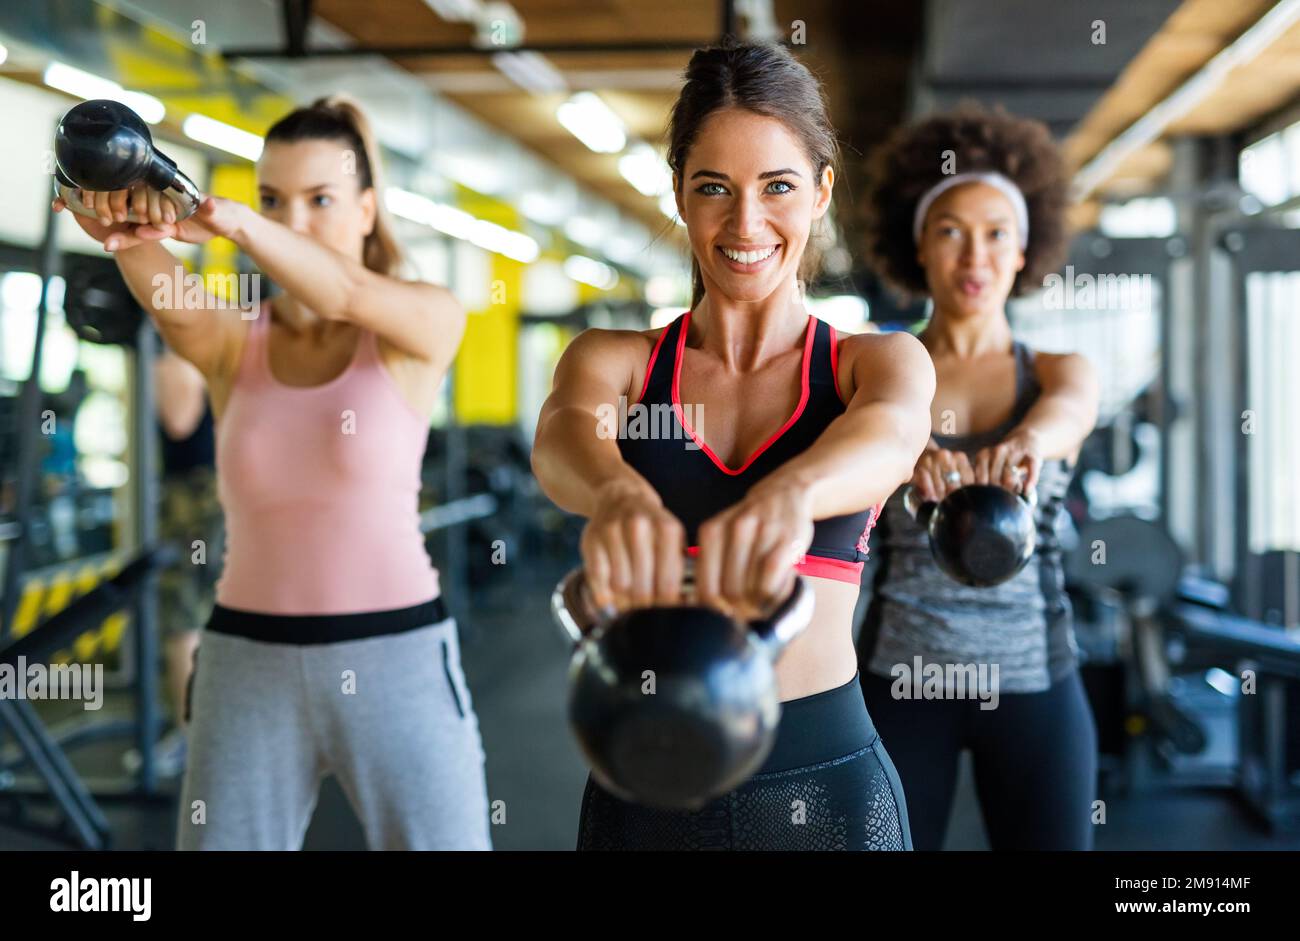 Eine Gruppe von fittigen Menschen, die Hanteln während eines Trainingskurms im Fitnessstudio heben Stockfoto